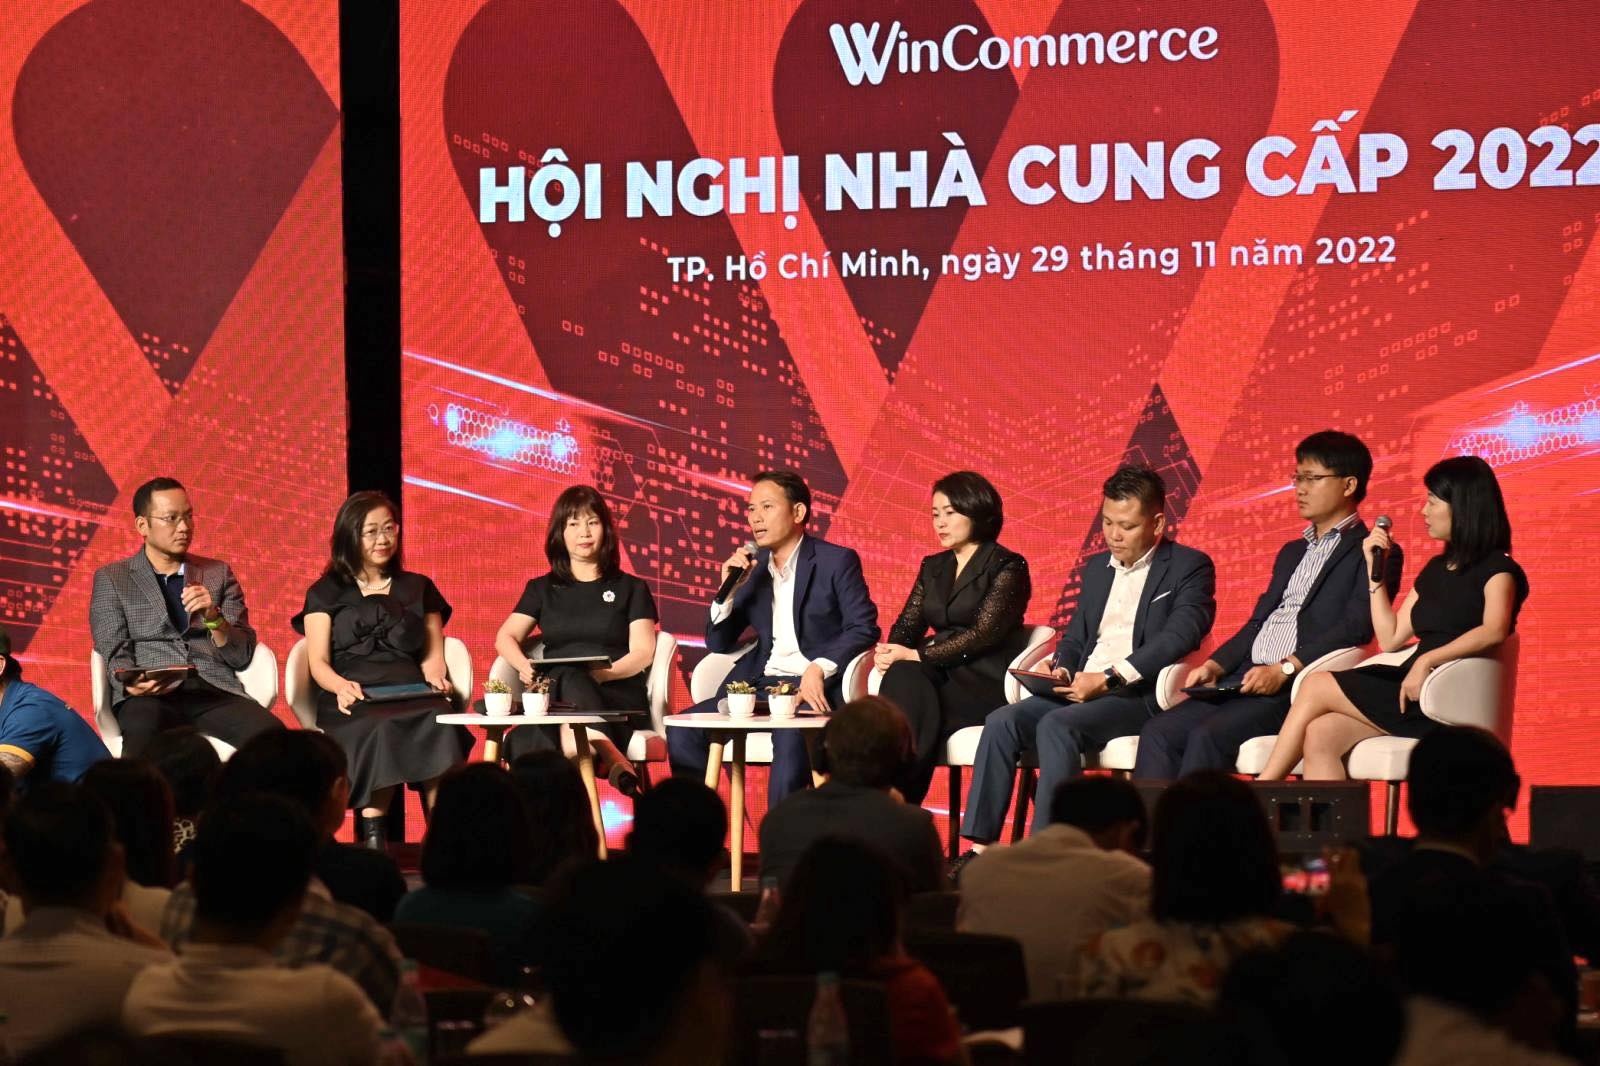 Hàng trăm doanh nghiệp lớn quy tụ tại Hội nghị Nhà cung cấp 2022 của Wincommerce-1